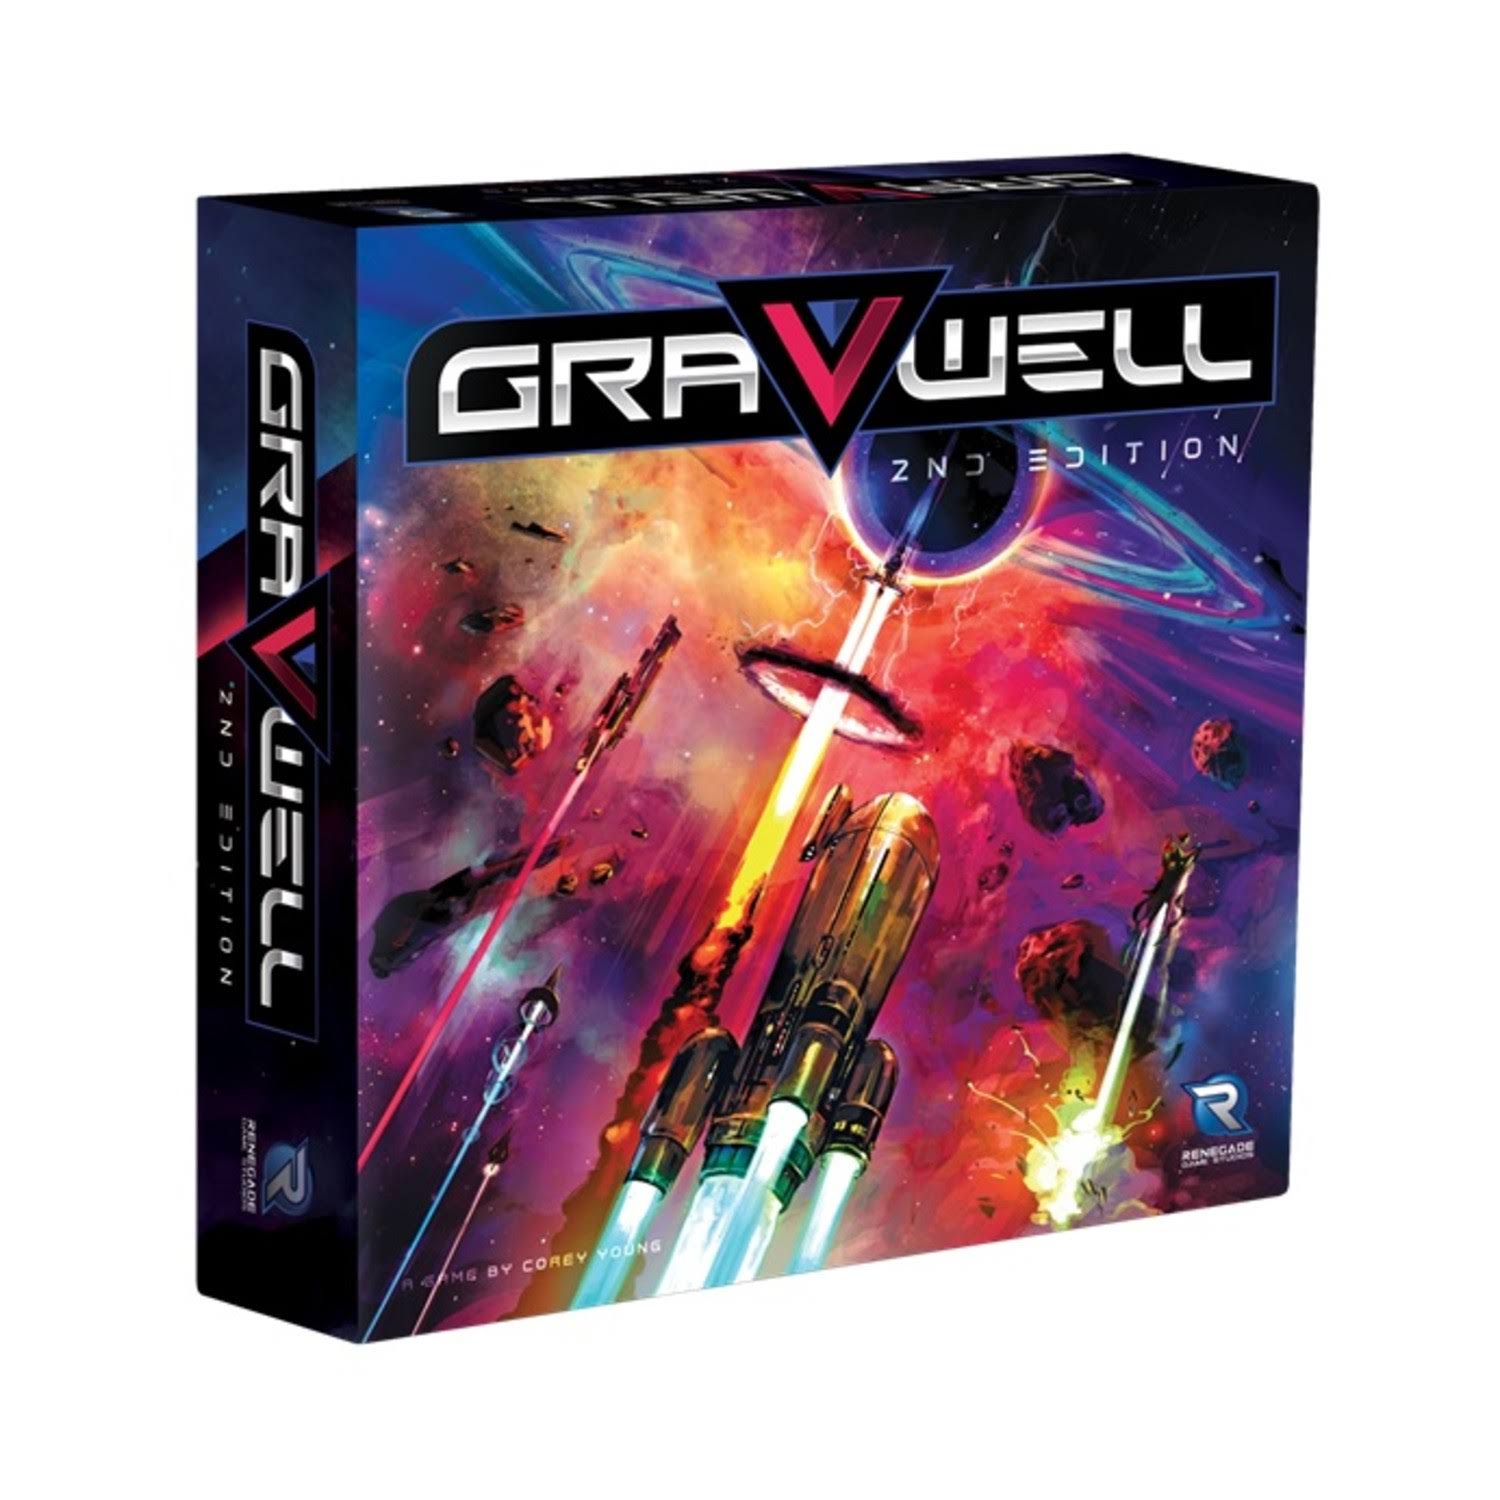 Gravwell: 2nd Edition